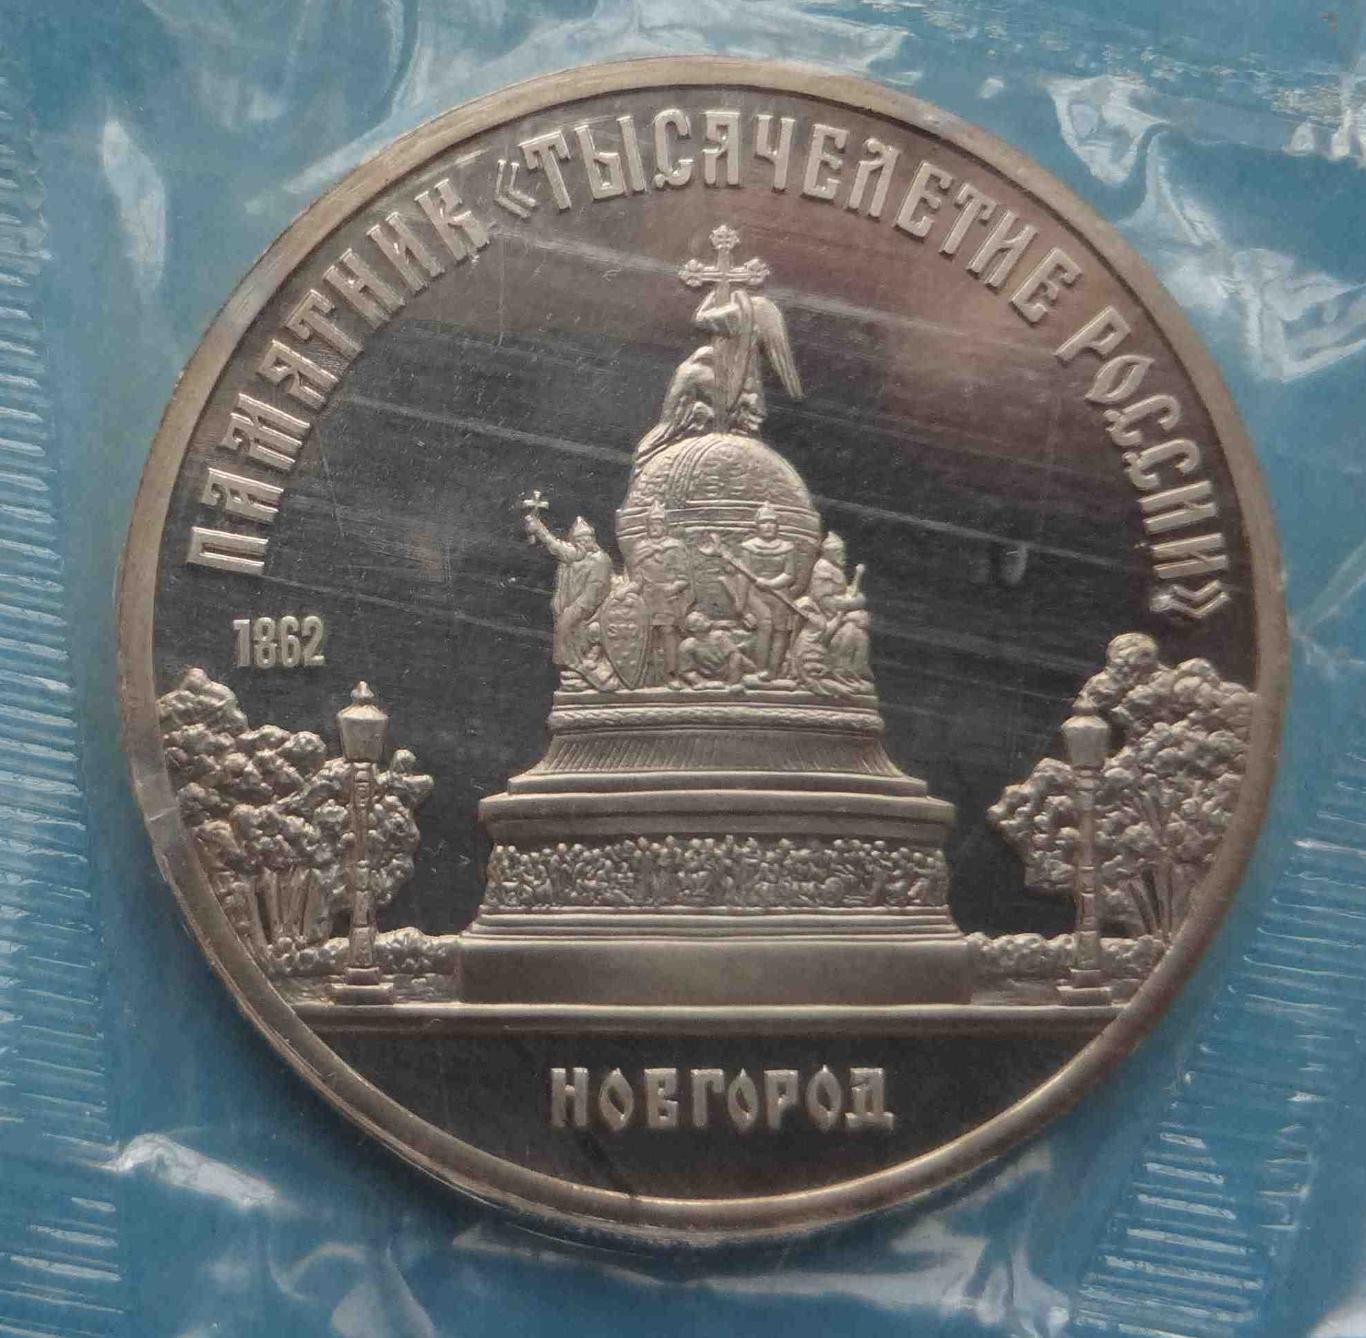 5 рублей 1988 СССР Новгород Памятник Тысячелетие России в упаковке (35) 1